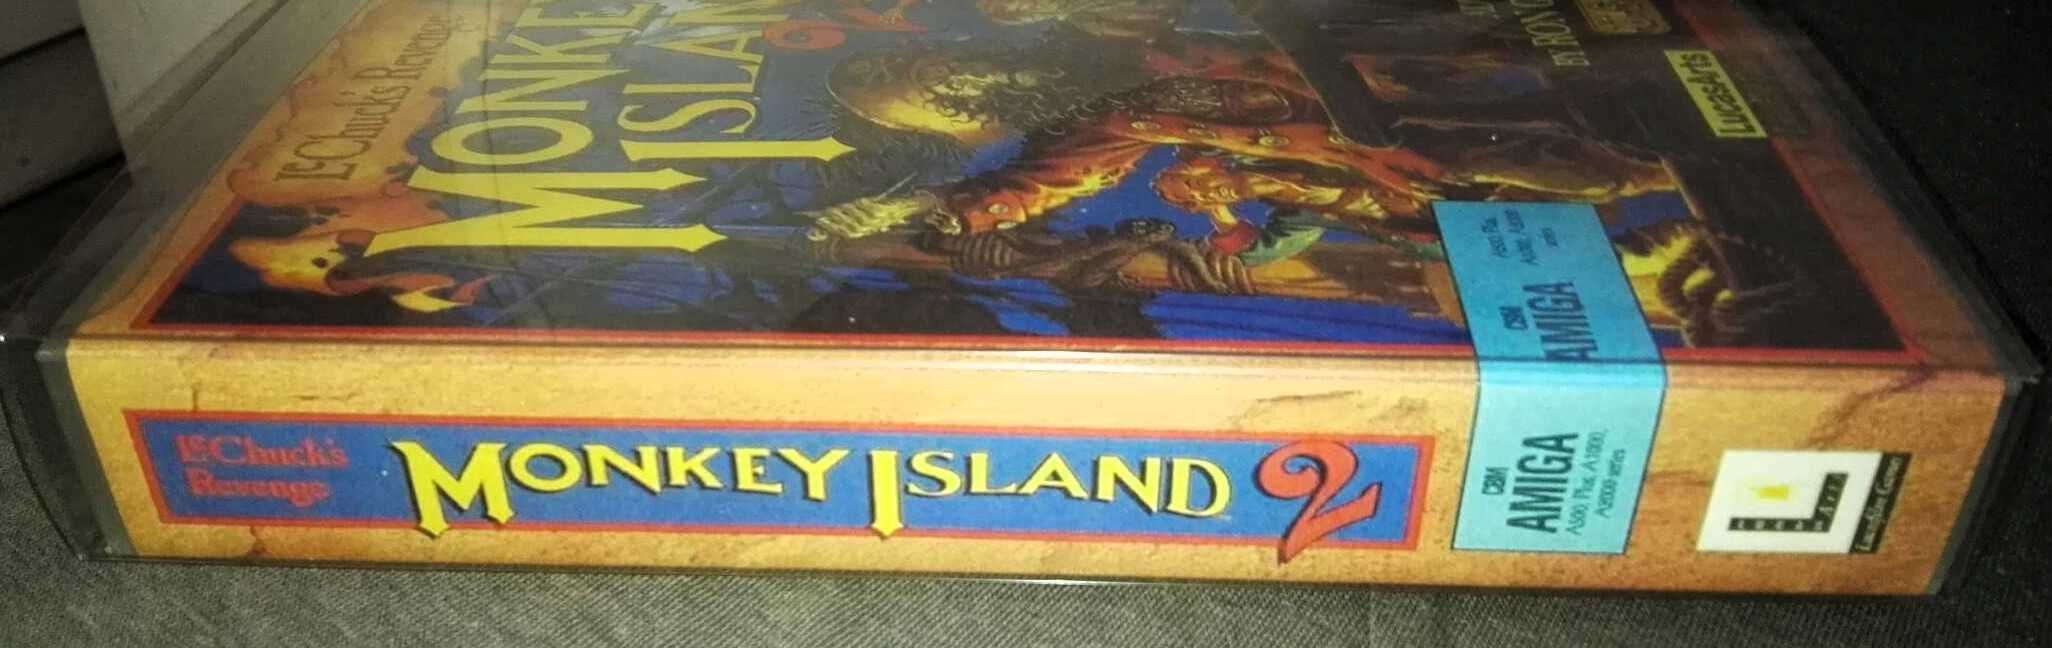 Monkey Island 2 Gry dyskietki dla stacja dyskietek mysz Amiga 500 600